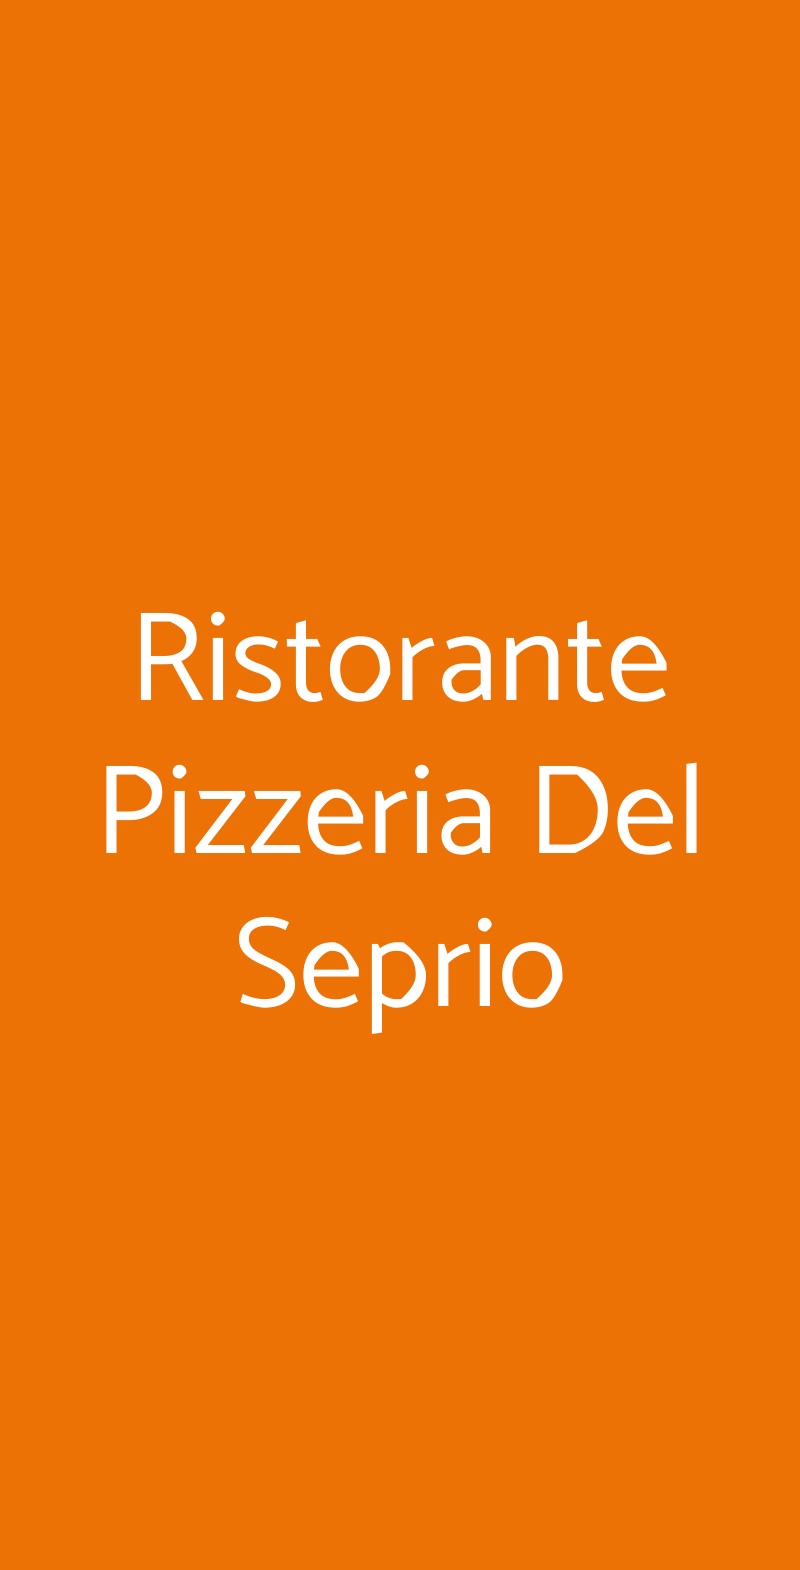 Ristorante Pizzeria Del Seprio Castelseprio menù 1 pagina